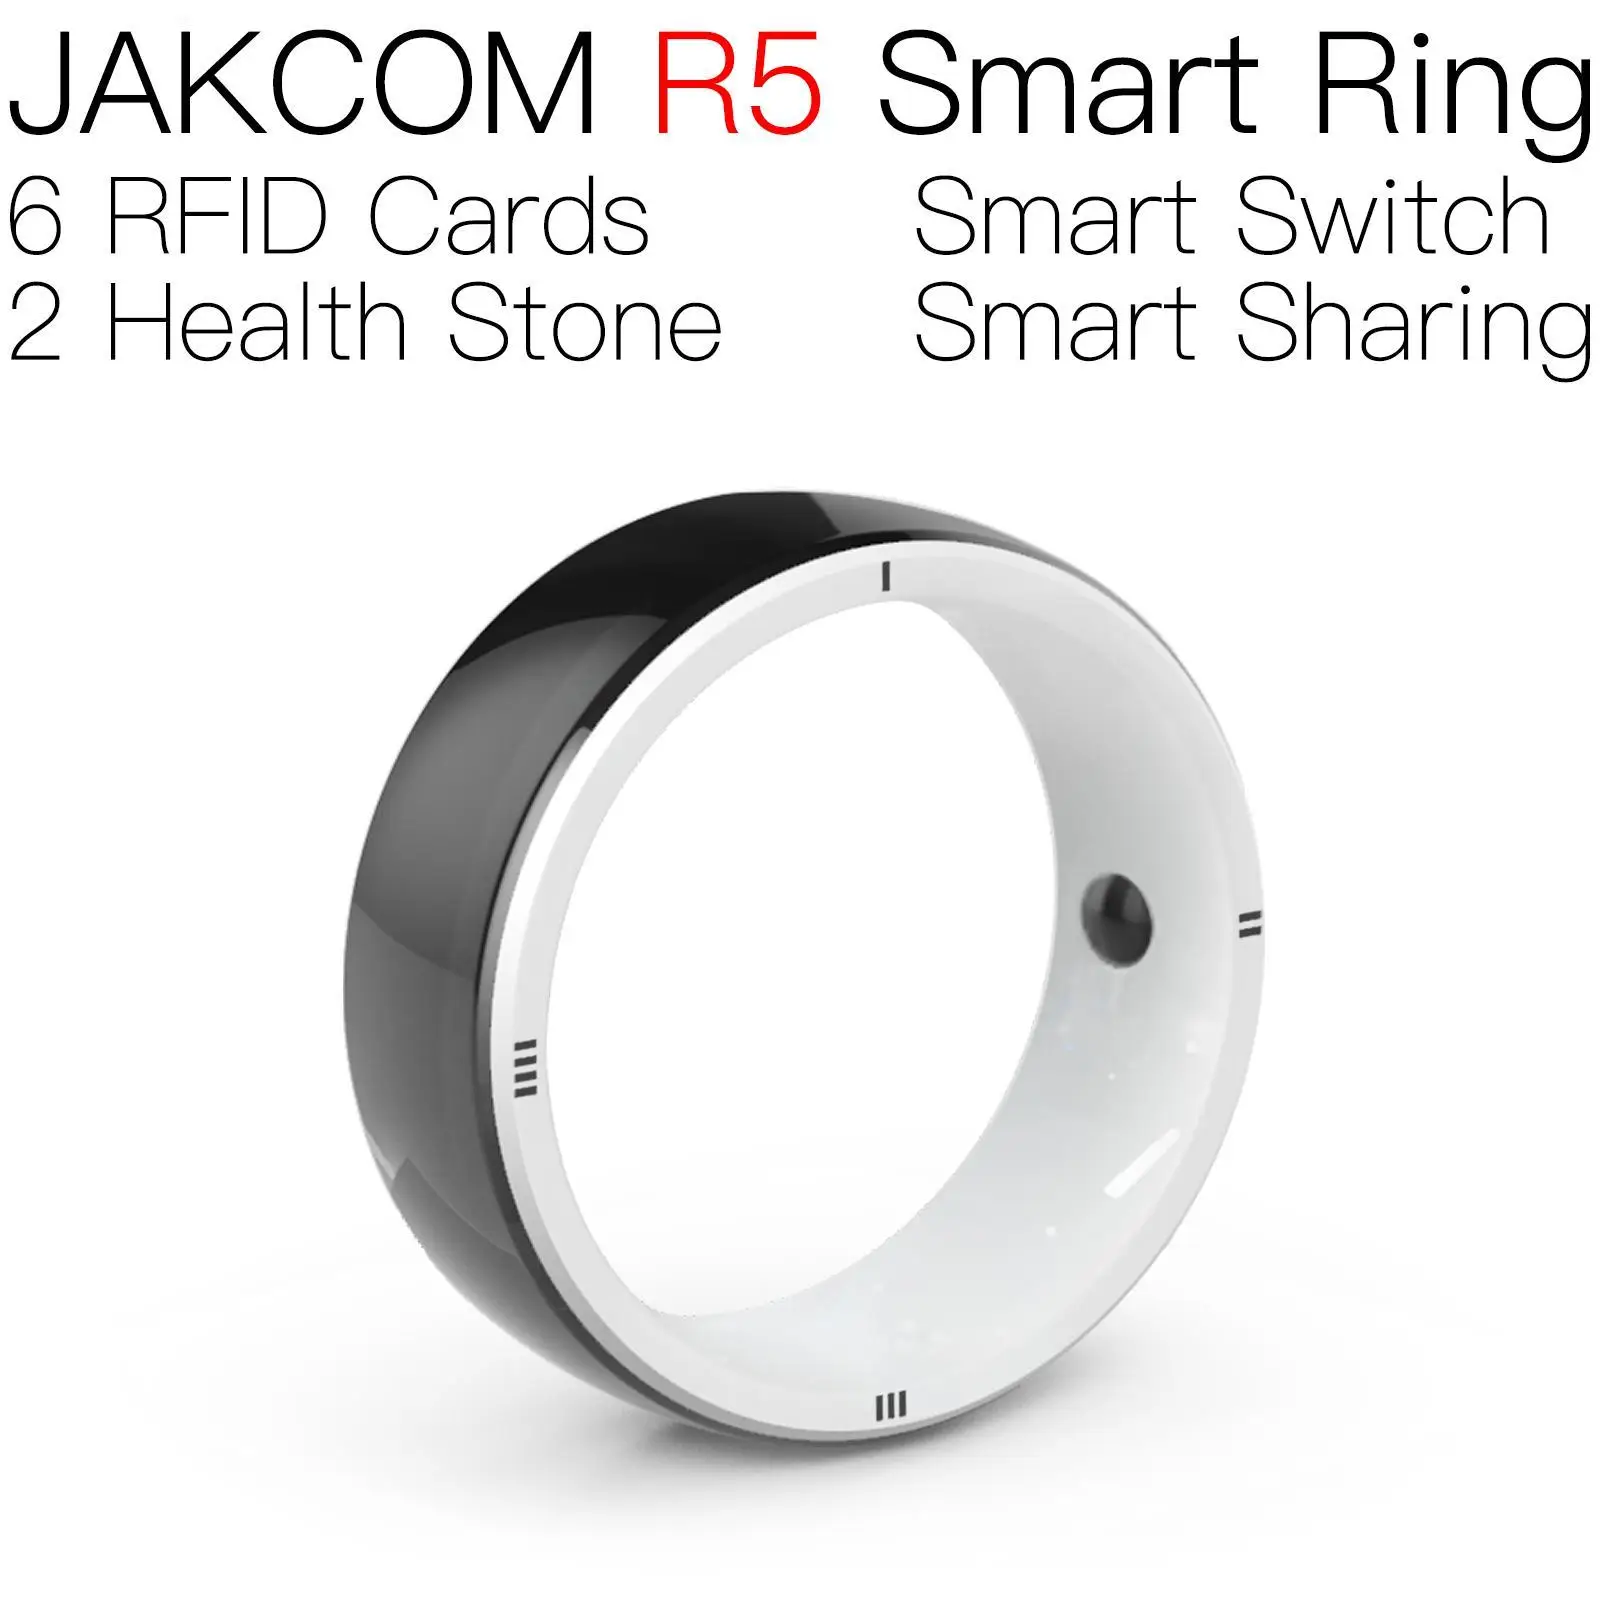 

Умное кольцо JAKCOM R5, новее, чем asic l3, считыватель микрочипов, низкочастотный идентификатор, мини-карточка, значок с радиочастотной идентификацией, наклейка с радиочастотной идентификацией, карточки для костюма